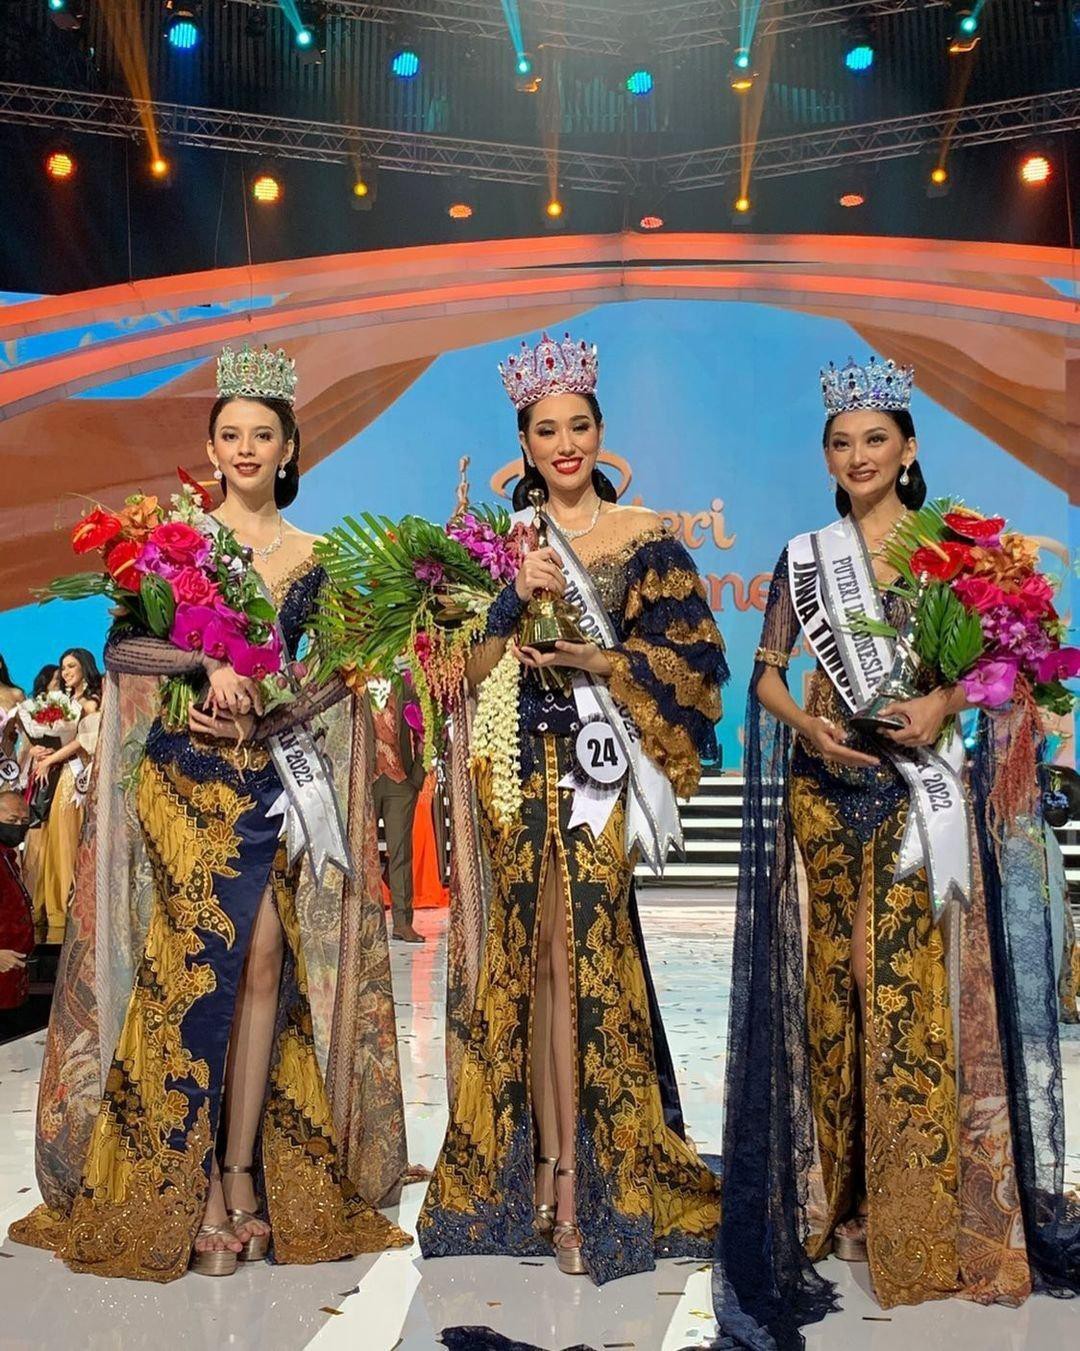 Tân Hoa hậu Hoàn vũ Indonesia có chiều cao khủng nhưng lỗi trang điểm khi đăng quang gây tranh cãi - Ảnh 1.